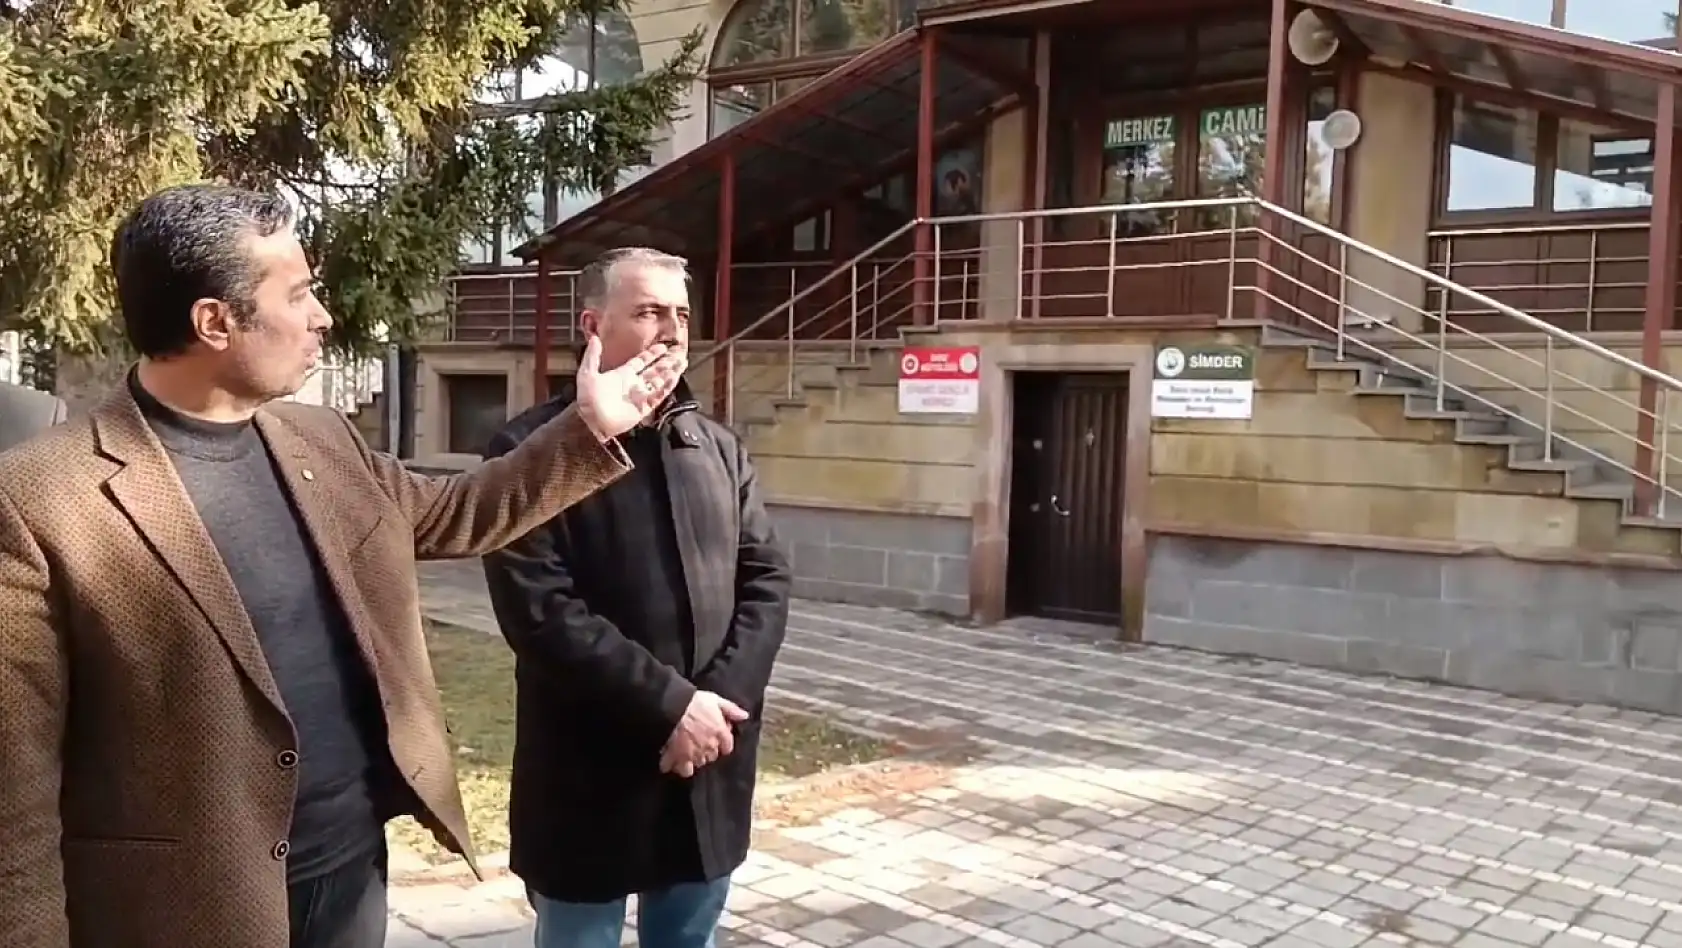 Kayseri'de camide siyaset tepkisi! Camii bahçesine kim parti bayrağı astı?